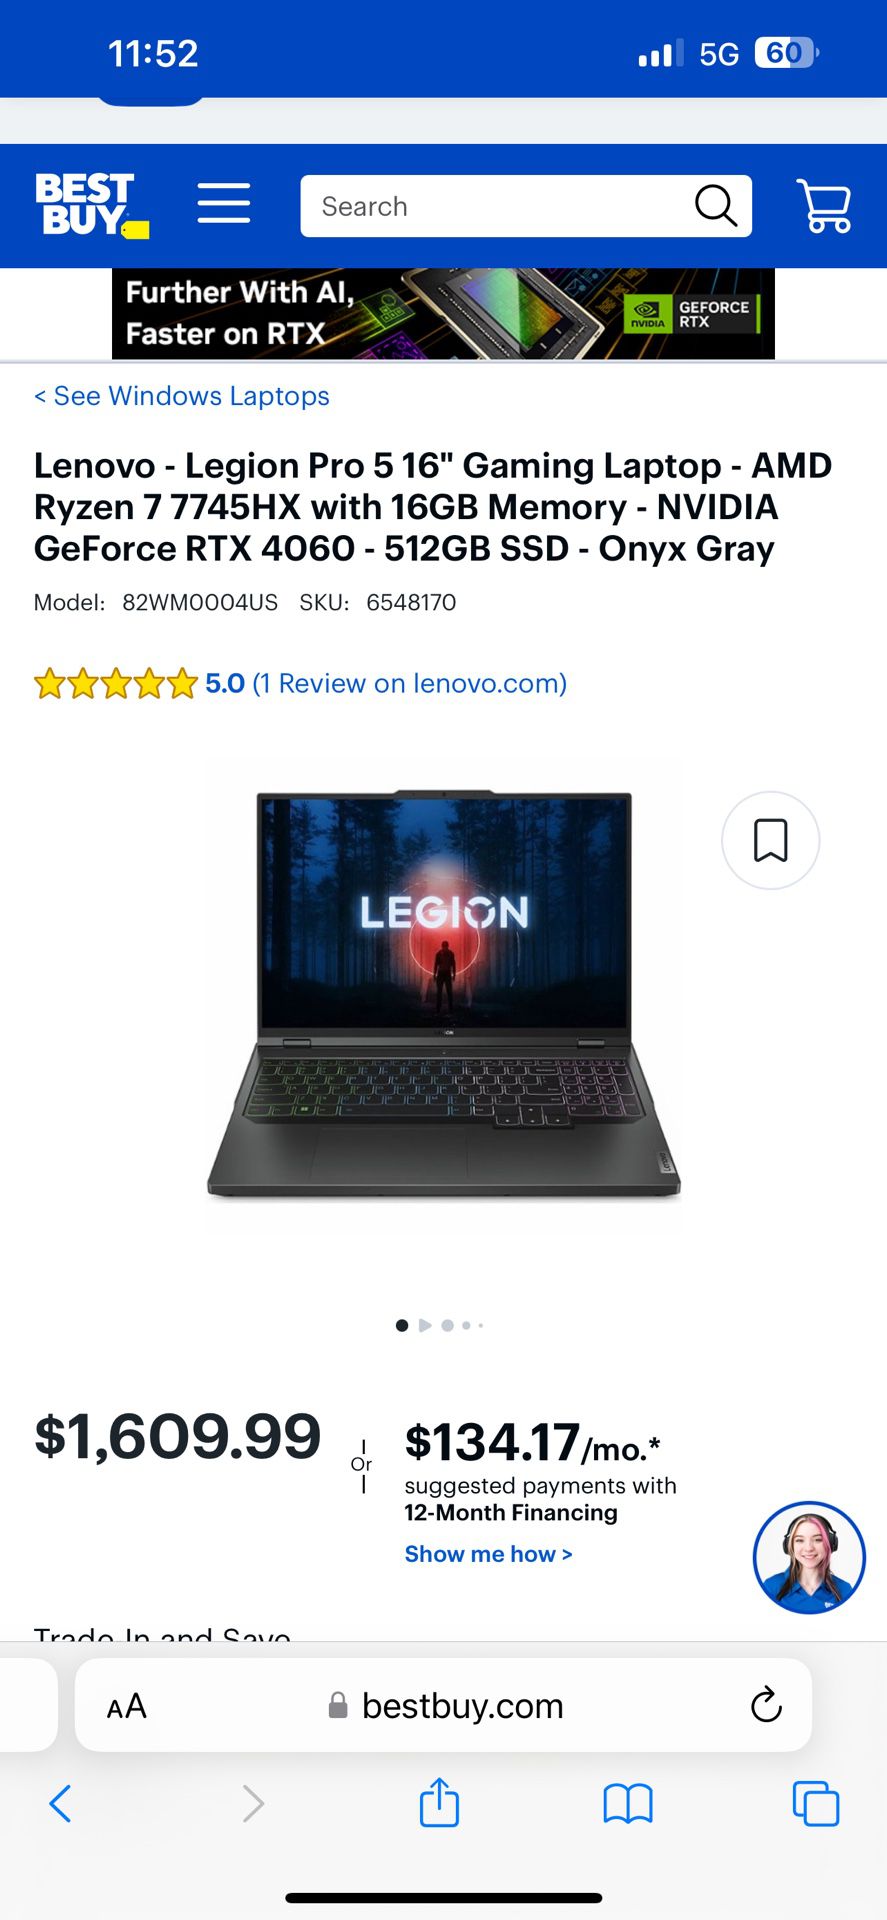 Lenovo Legion 5 Pro (Description In Picture)